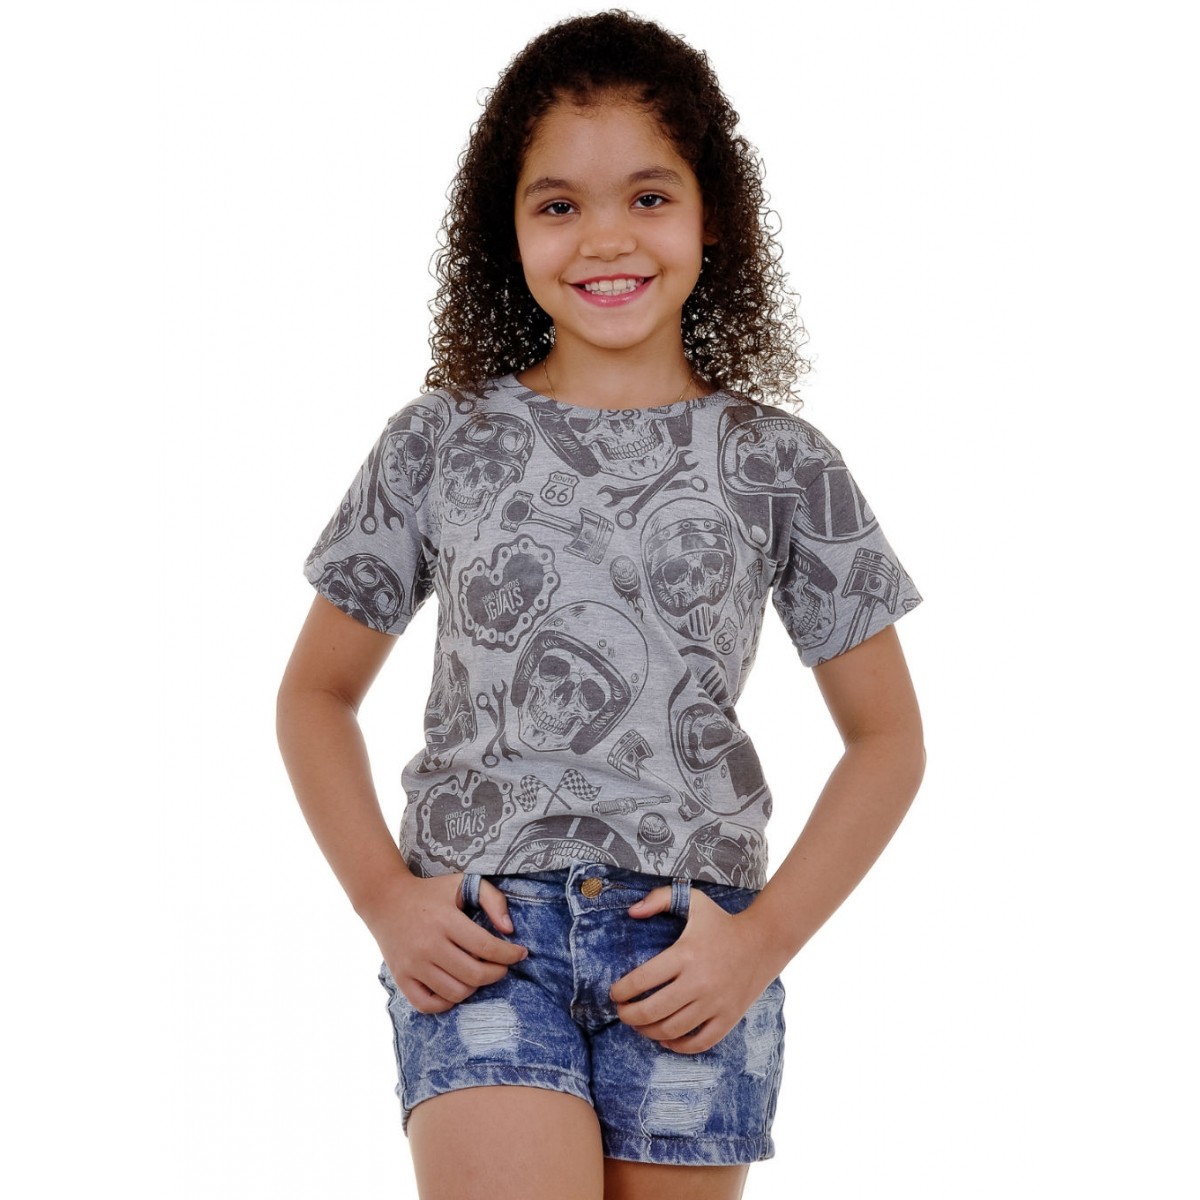 Camiseta Infantil Caveira Motociclista - Somos Todos Iguais